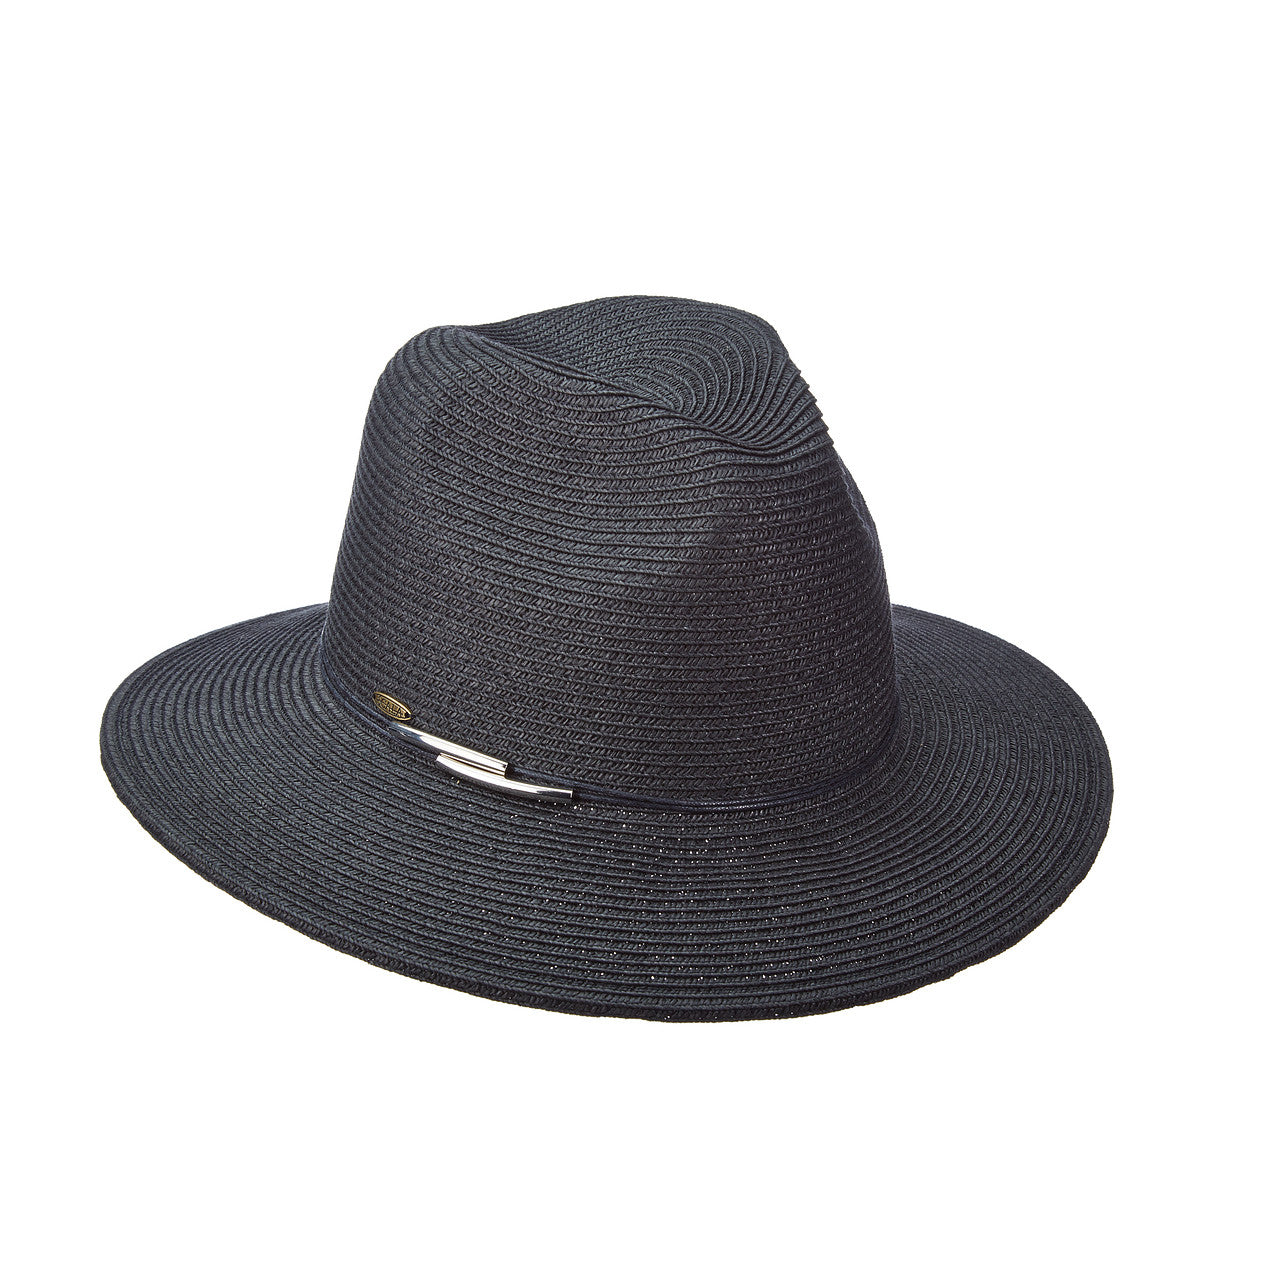 Vivianna Panama Hat in Black Color